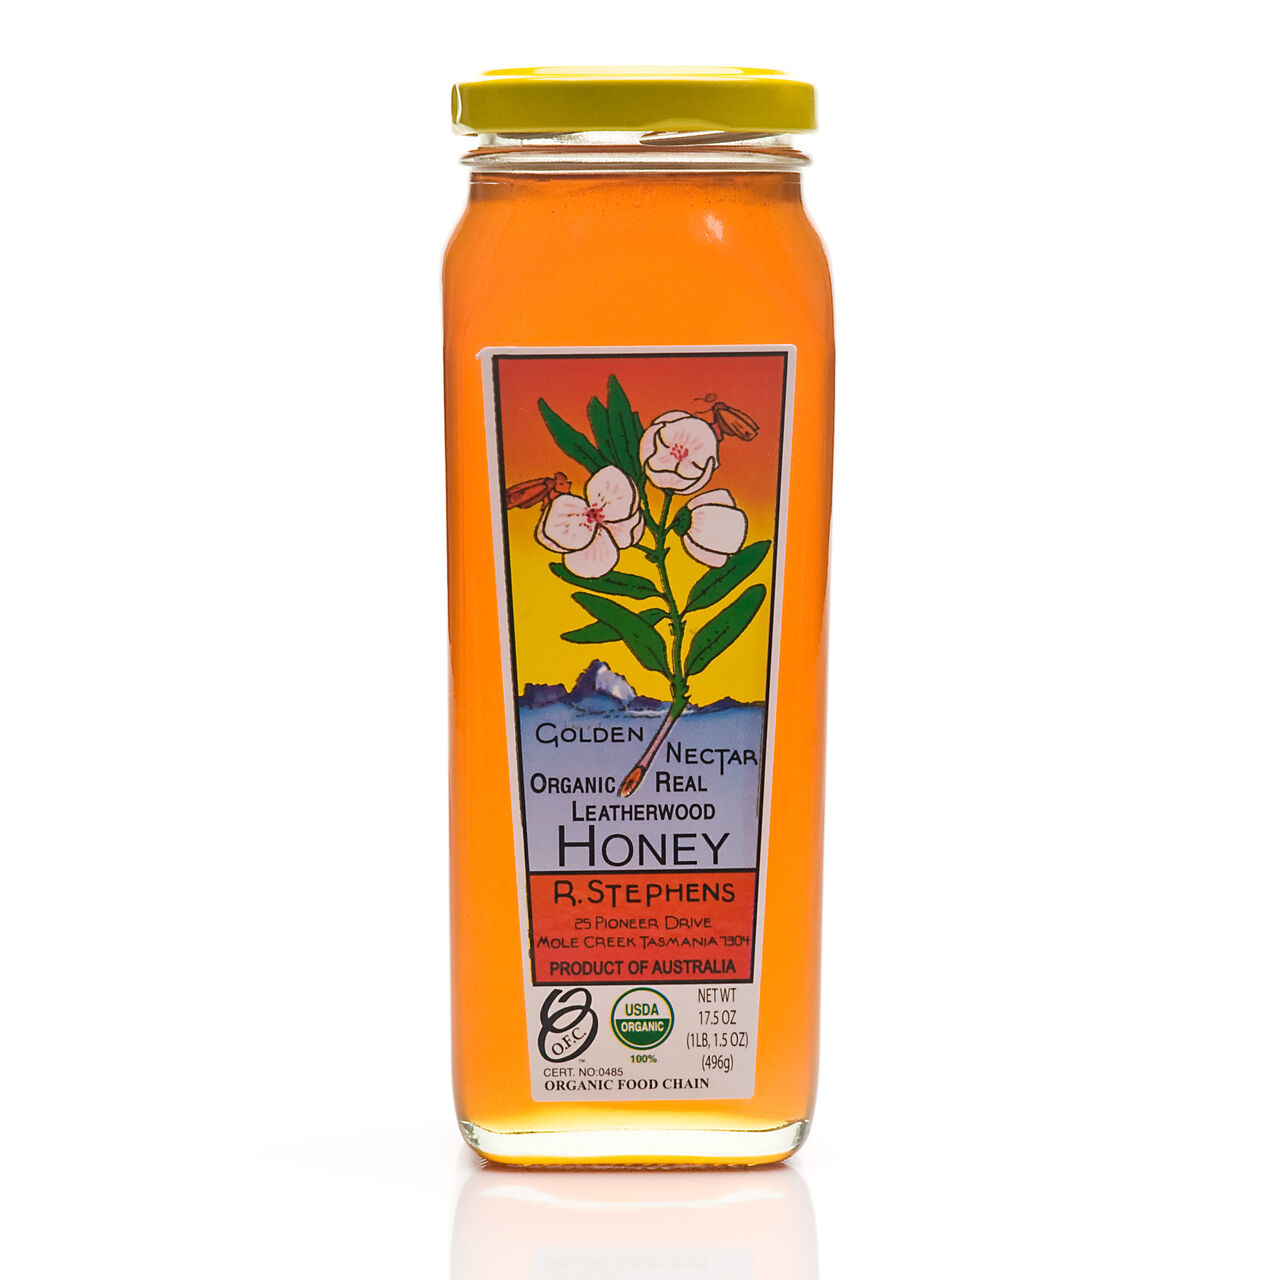 Golden Nectar Organic Real Leatherwood Honey - 17.5oz, , large image number 0